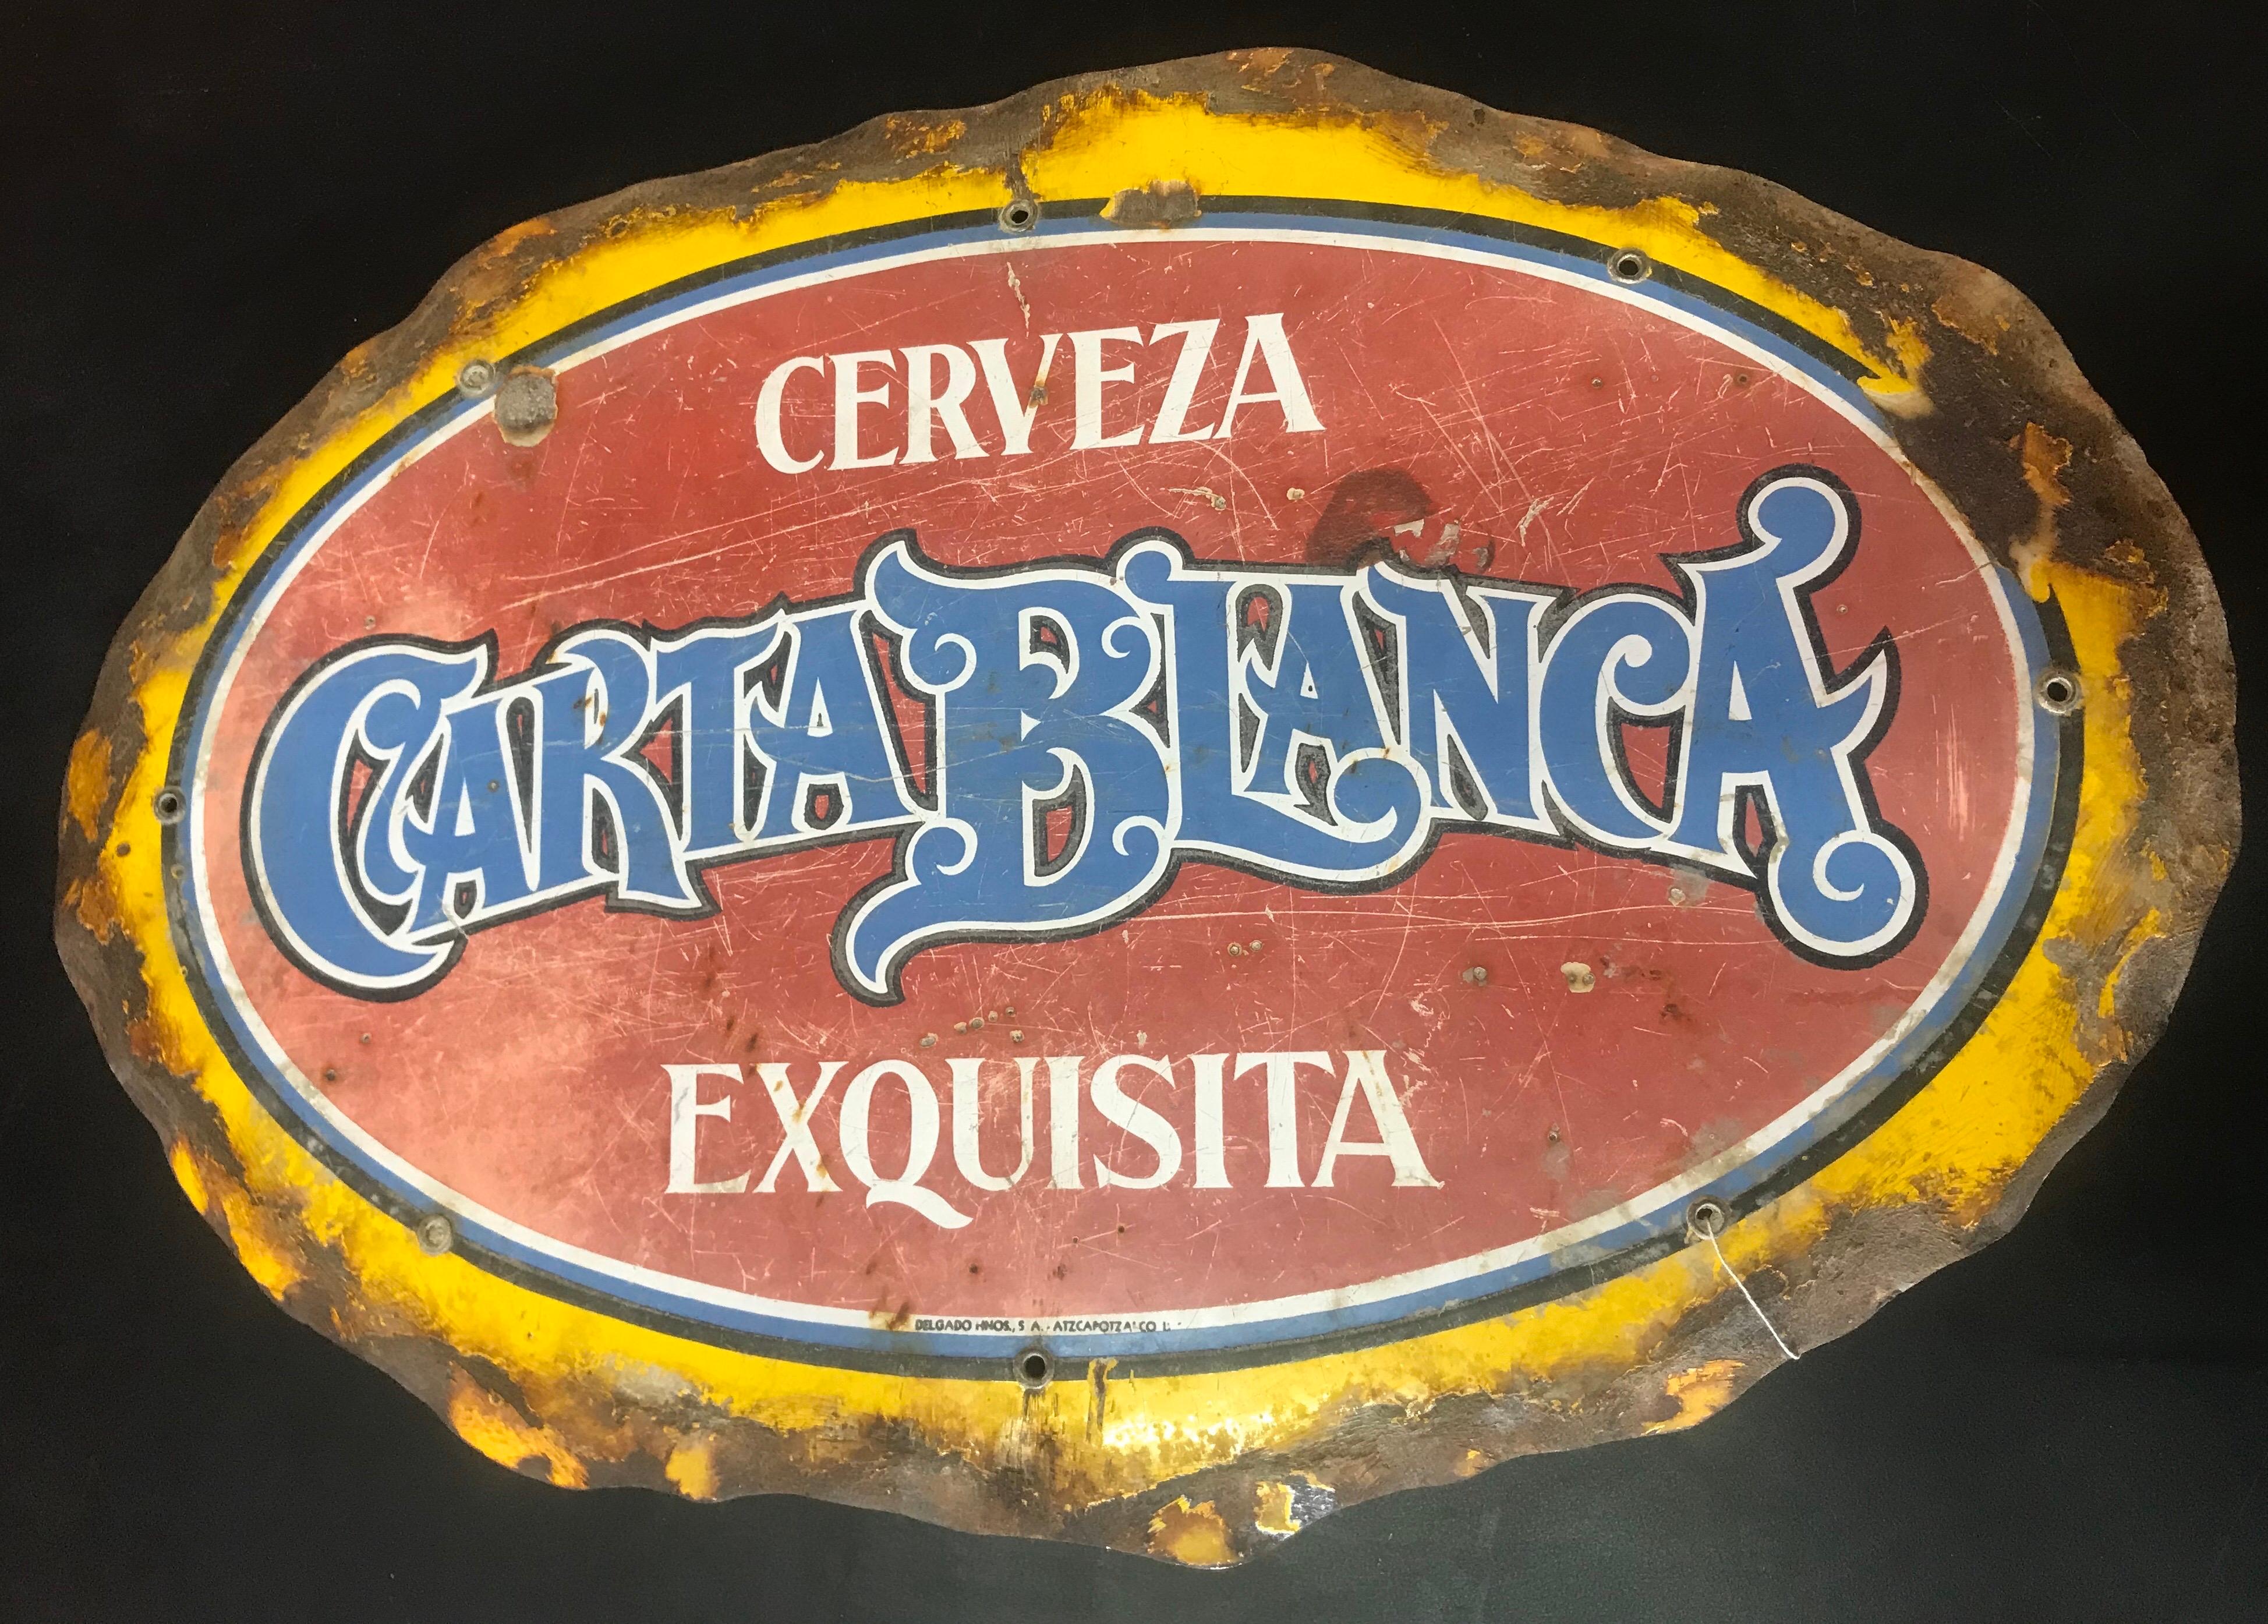 Seltenes Carta Blanca Bier Porzellan Metallschild.
Mexiko, ca. 1940er Jahre.